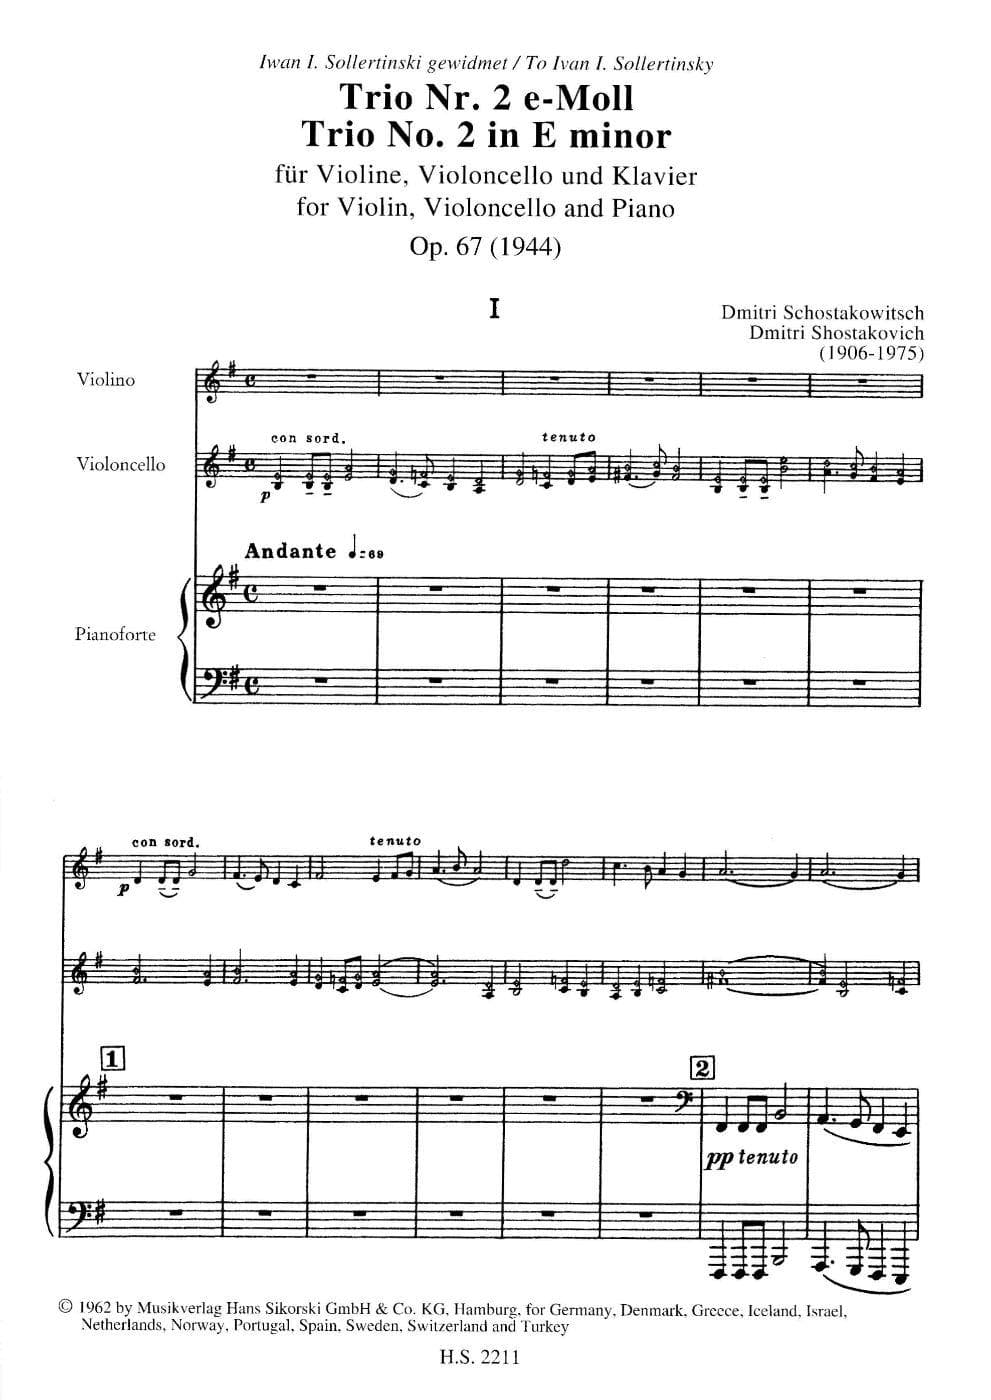 Shostakovich, Dmitri - Piano Trio No 2 in e minor, Op 67 For Violin, Cello and Piano Published by G Schirmer